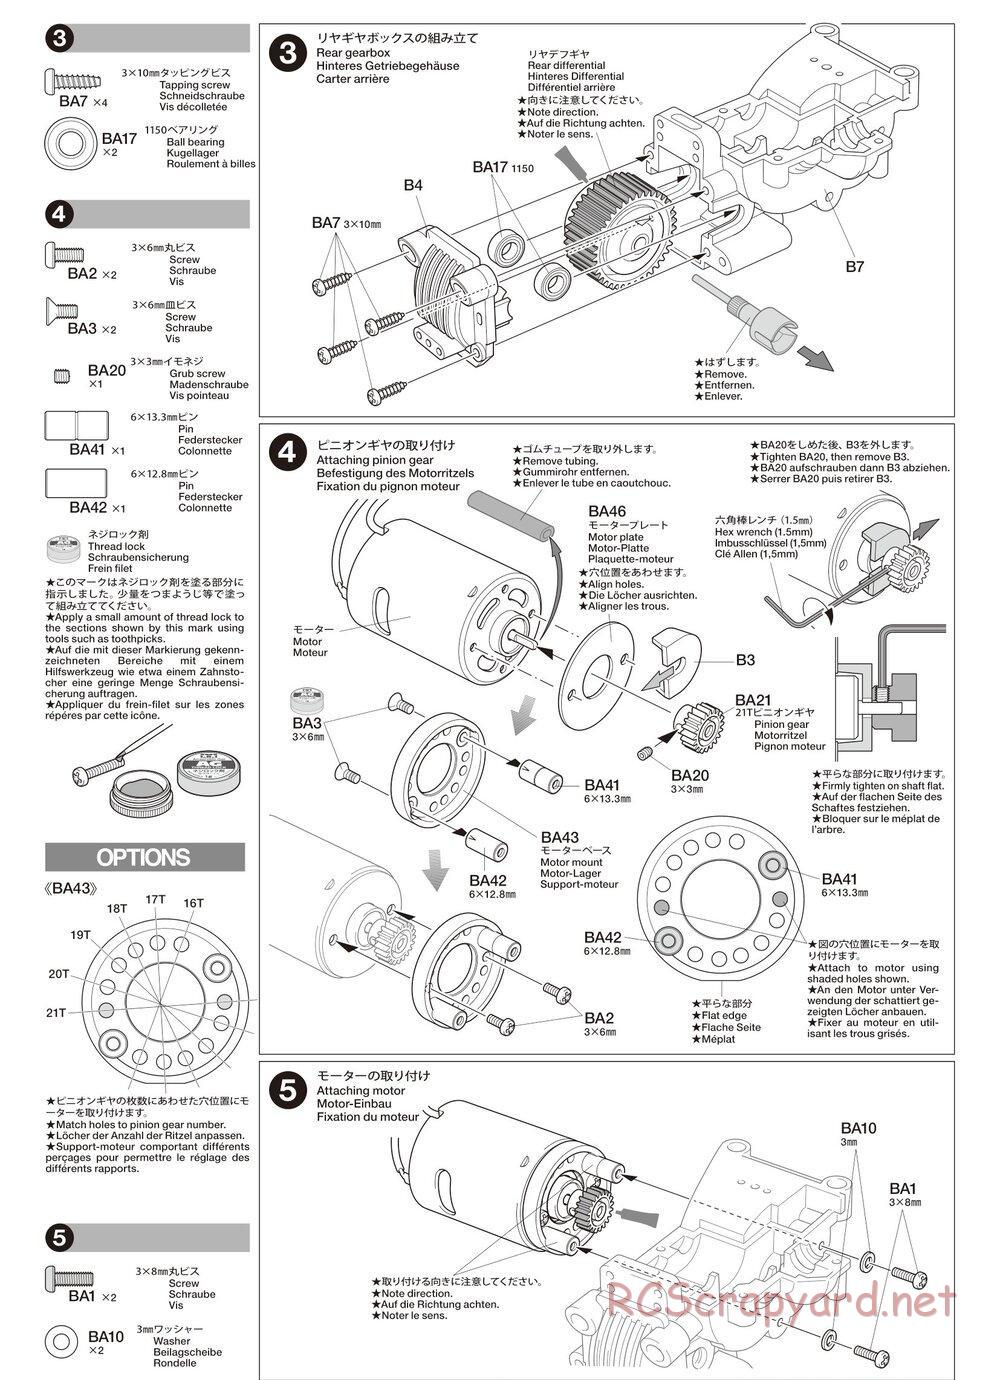 Tamiya - TA02SW Chassis - Manual - Page 5